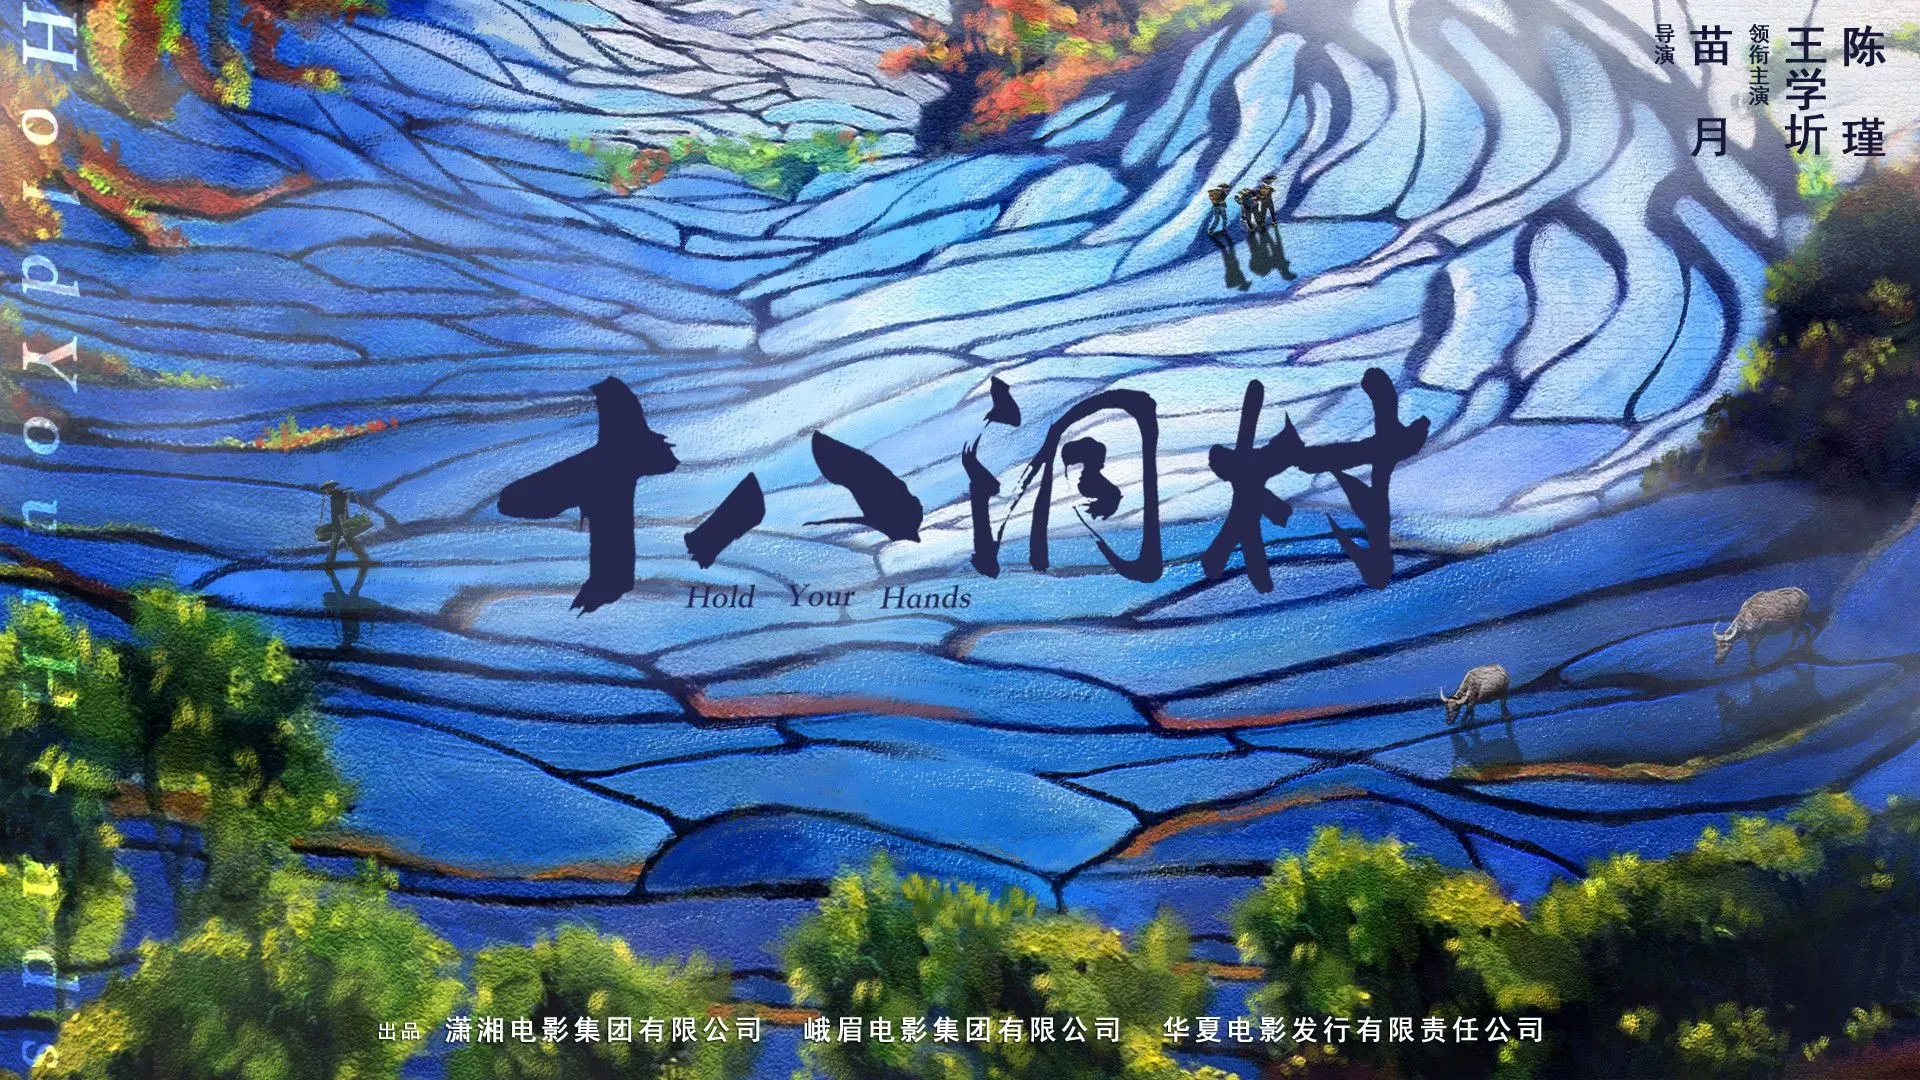 《十八洞村》描绘中国山水上的农民